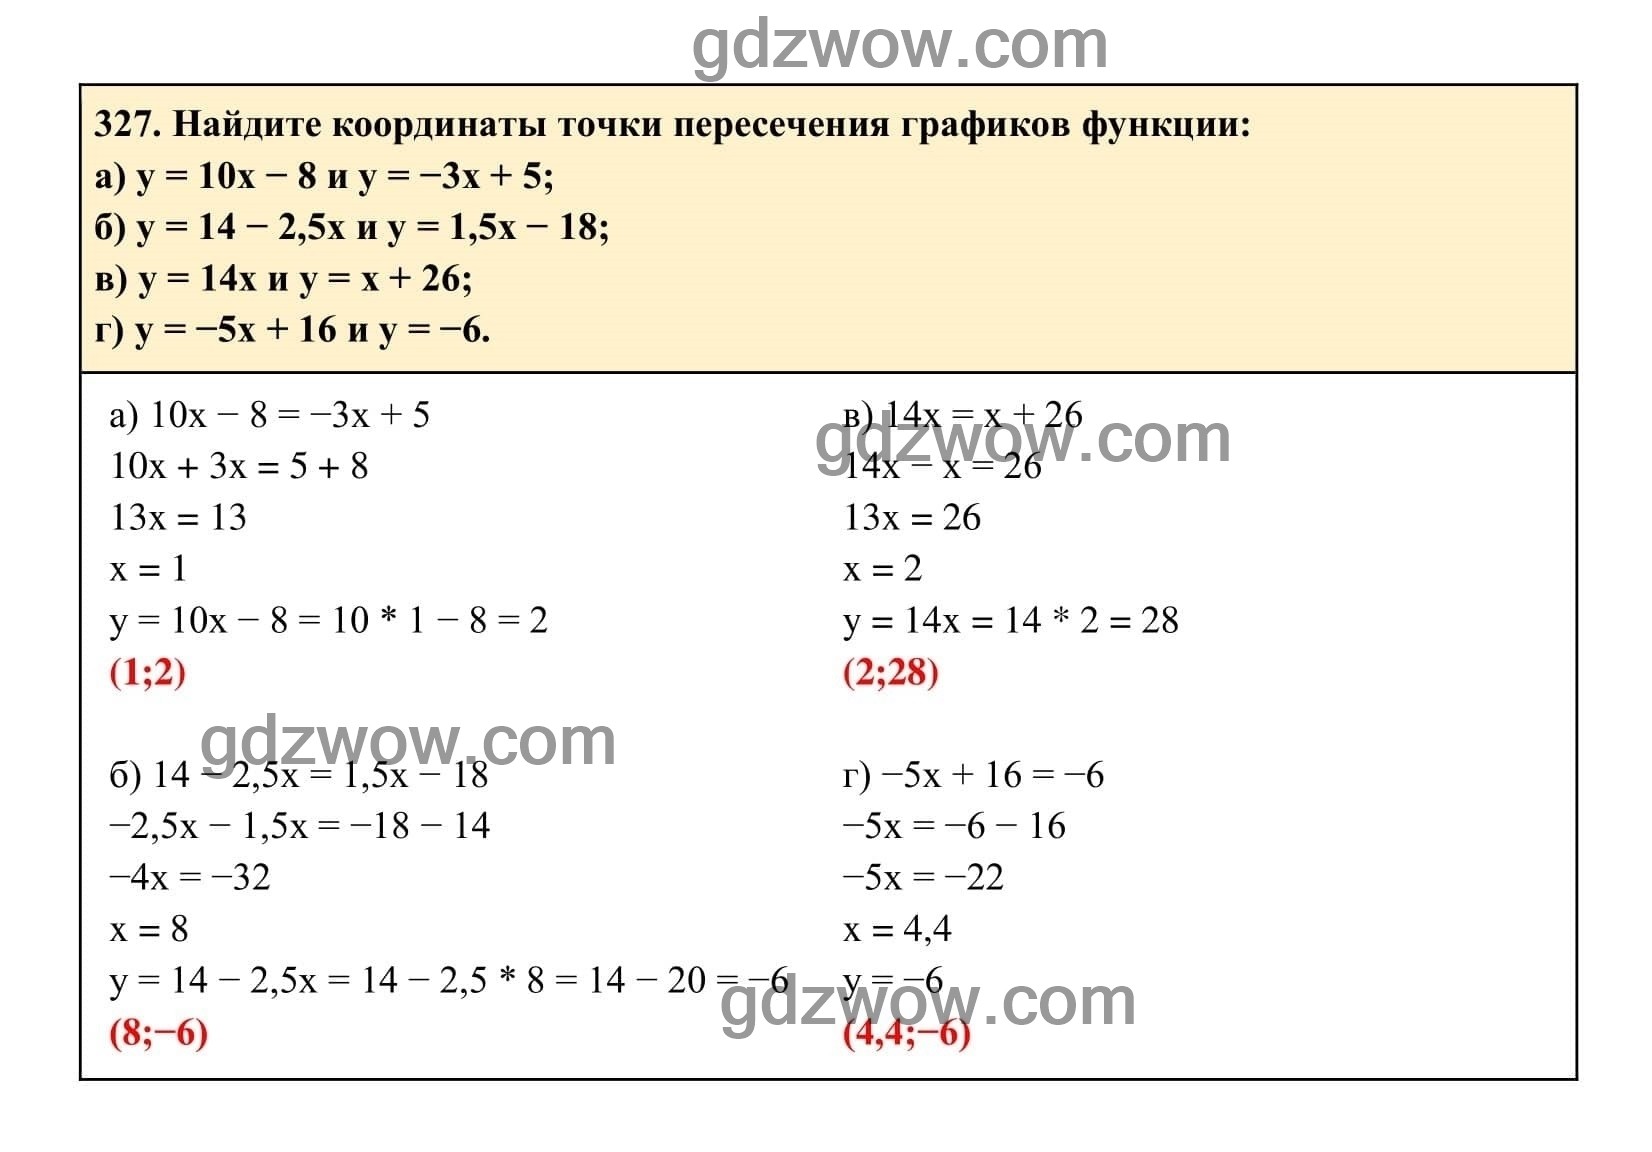 Упражнение 327 - ГДЗ по Алгебре 7 класс Учебник Макарычев (решебник) - GDZwow